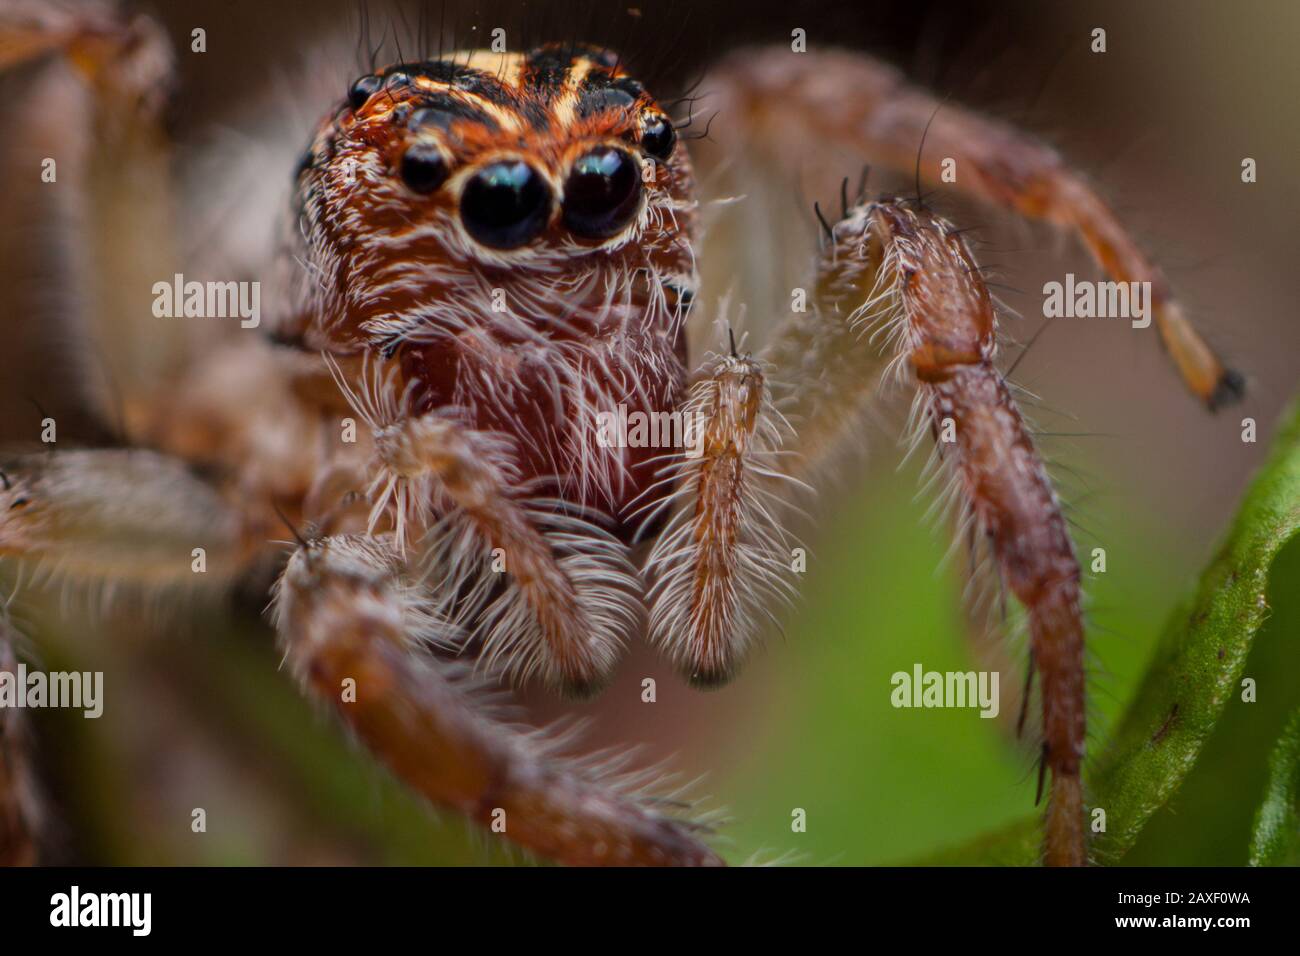 Portrait détaillé d'une araignée de saut, gros plan avec les yeux des salticidae Banque D'Images